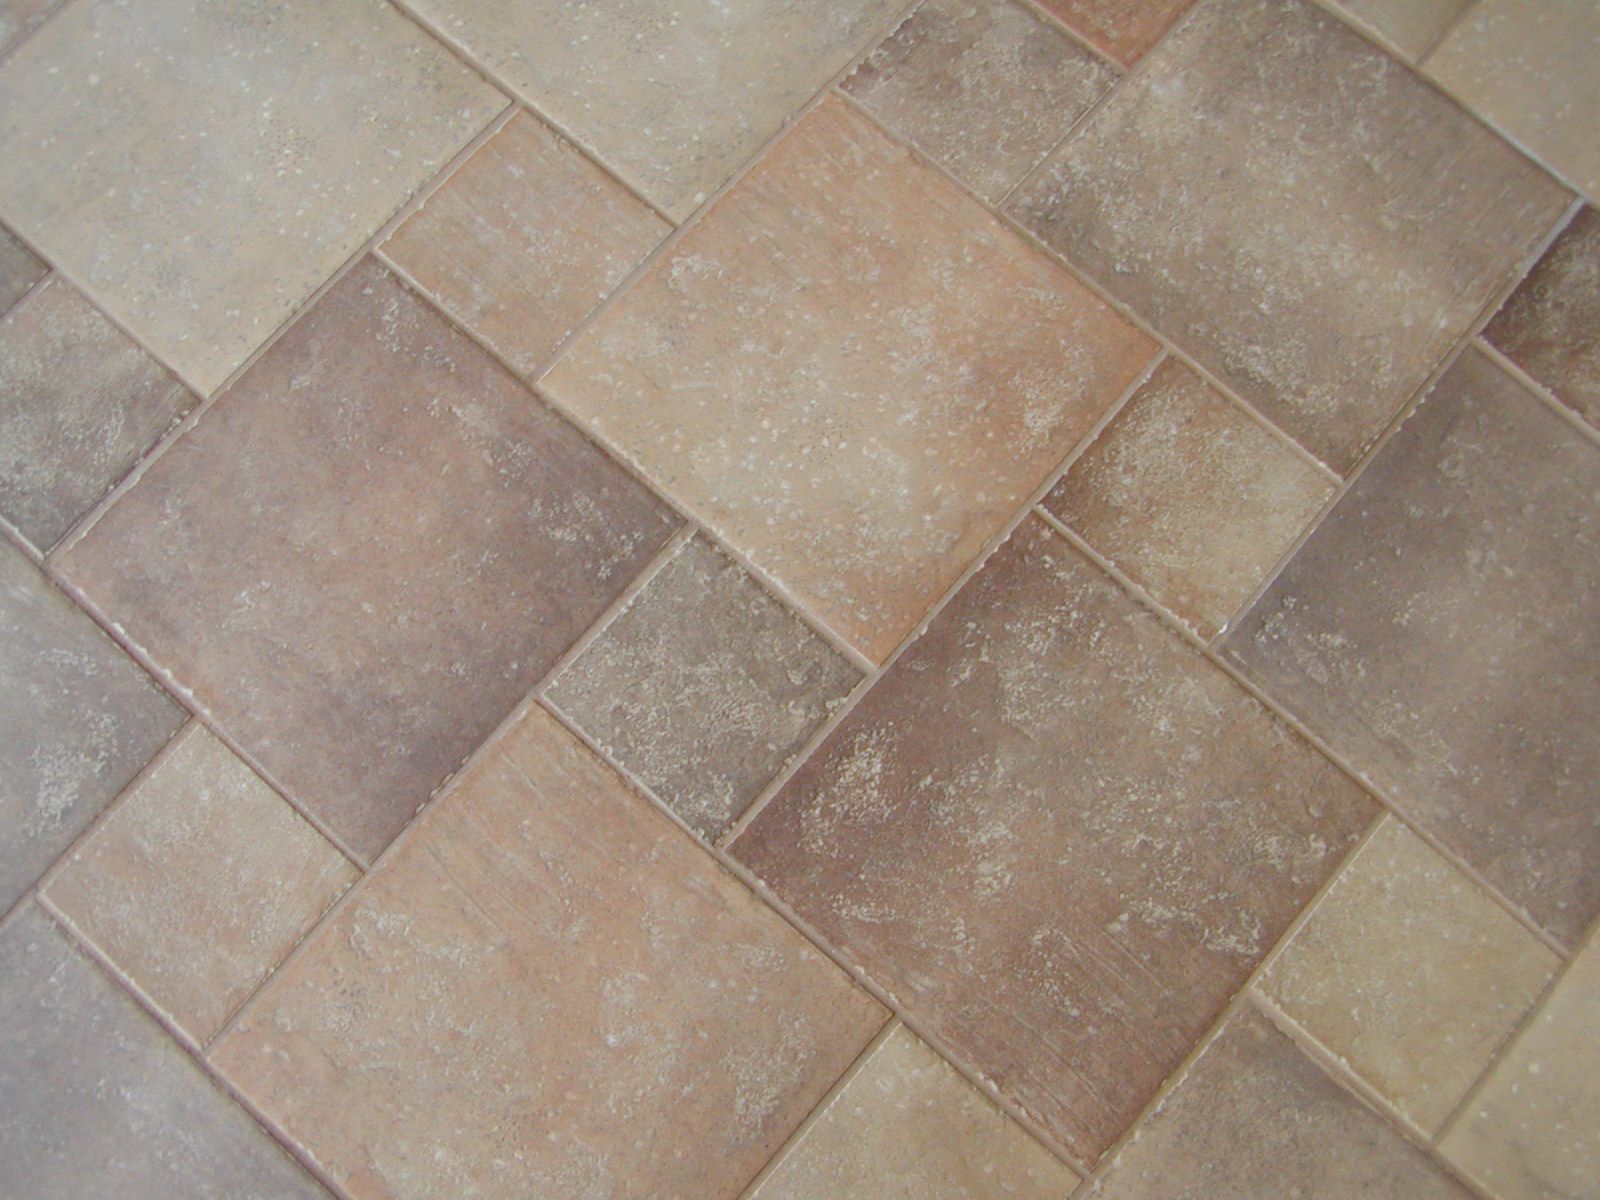 tiled floors